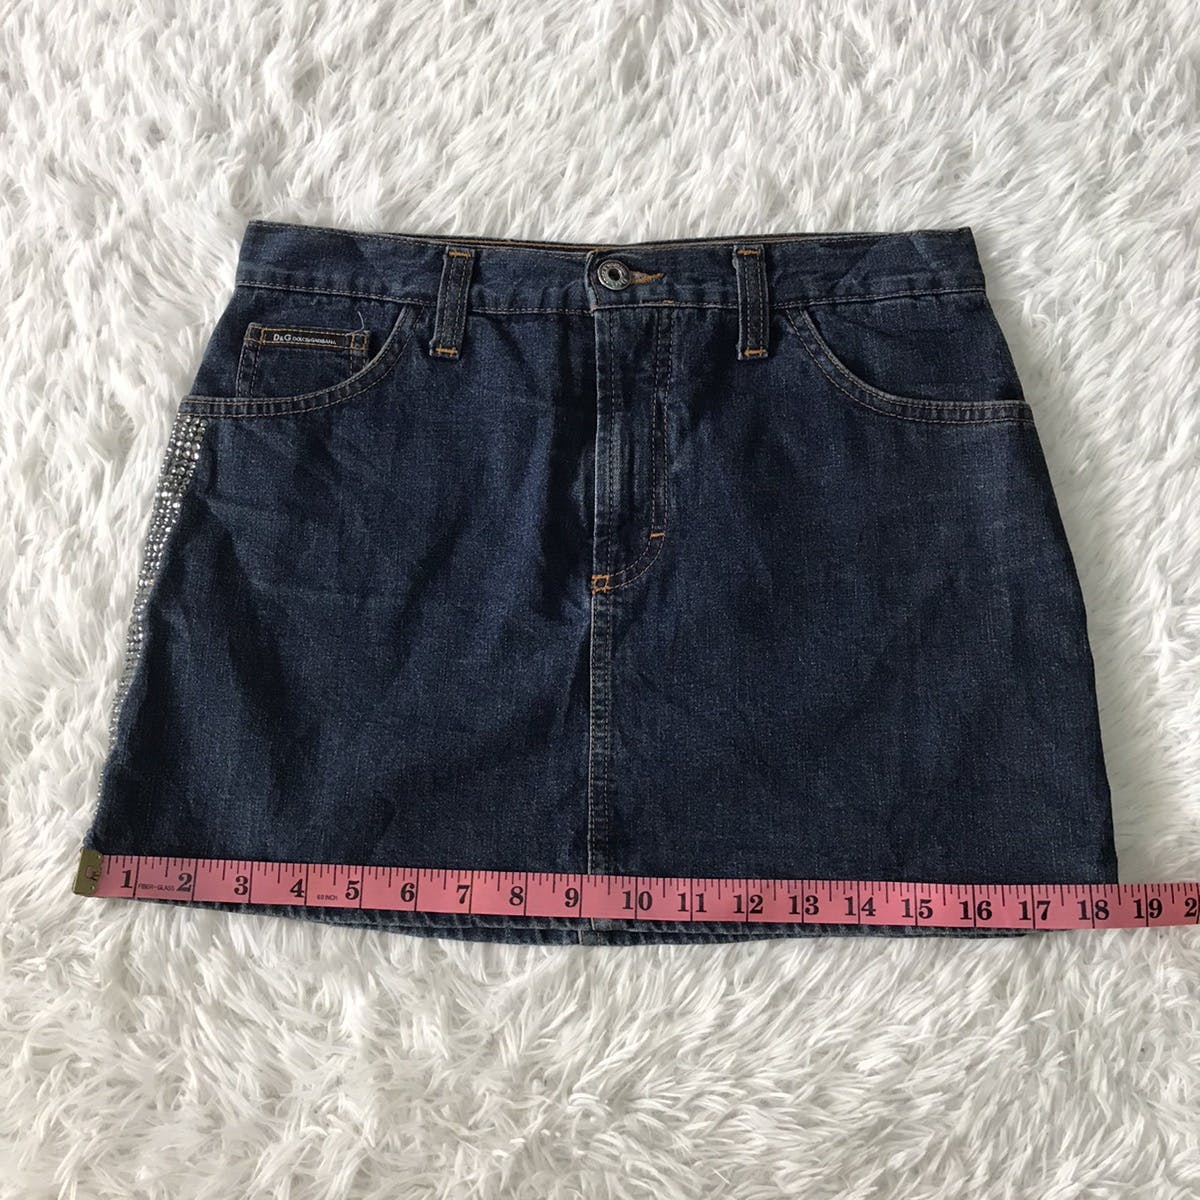 💥Steals💥D&G Dolce & Gabbana Skirt Jeans - 22